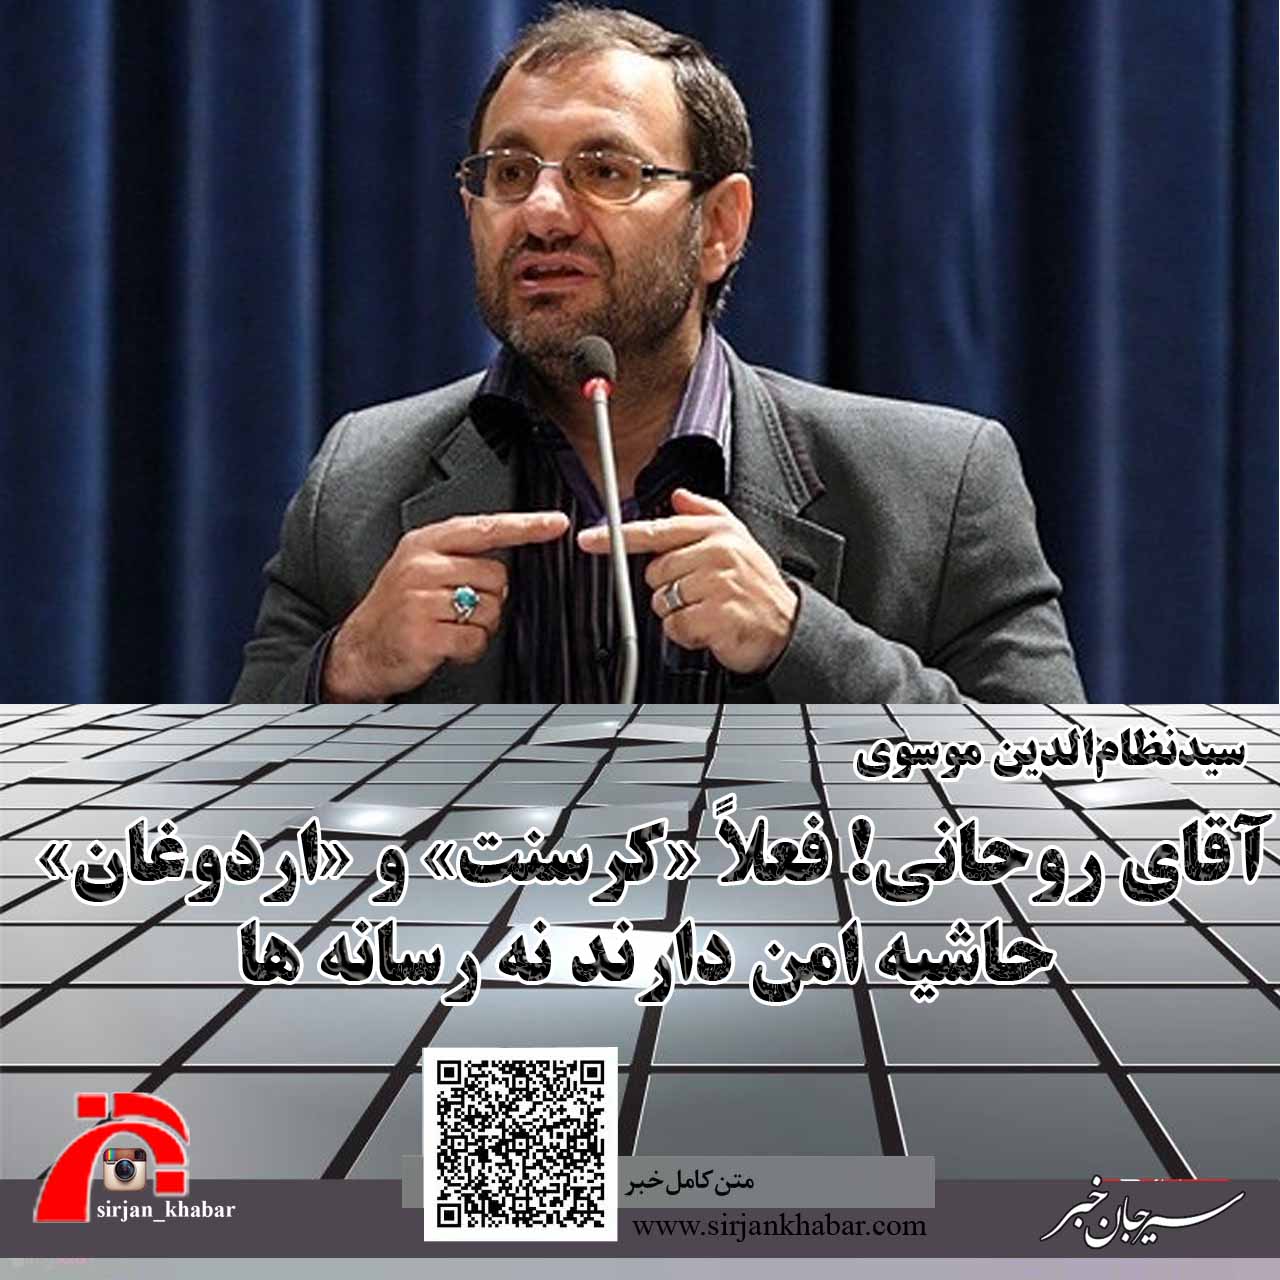 آقای روحانی! فعلاً «کرسنت» و «اردوغان» حاشیه امن دارند نه رسانه ها